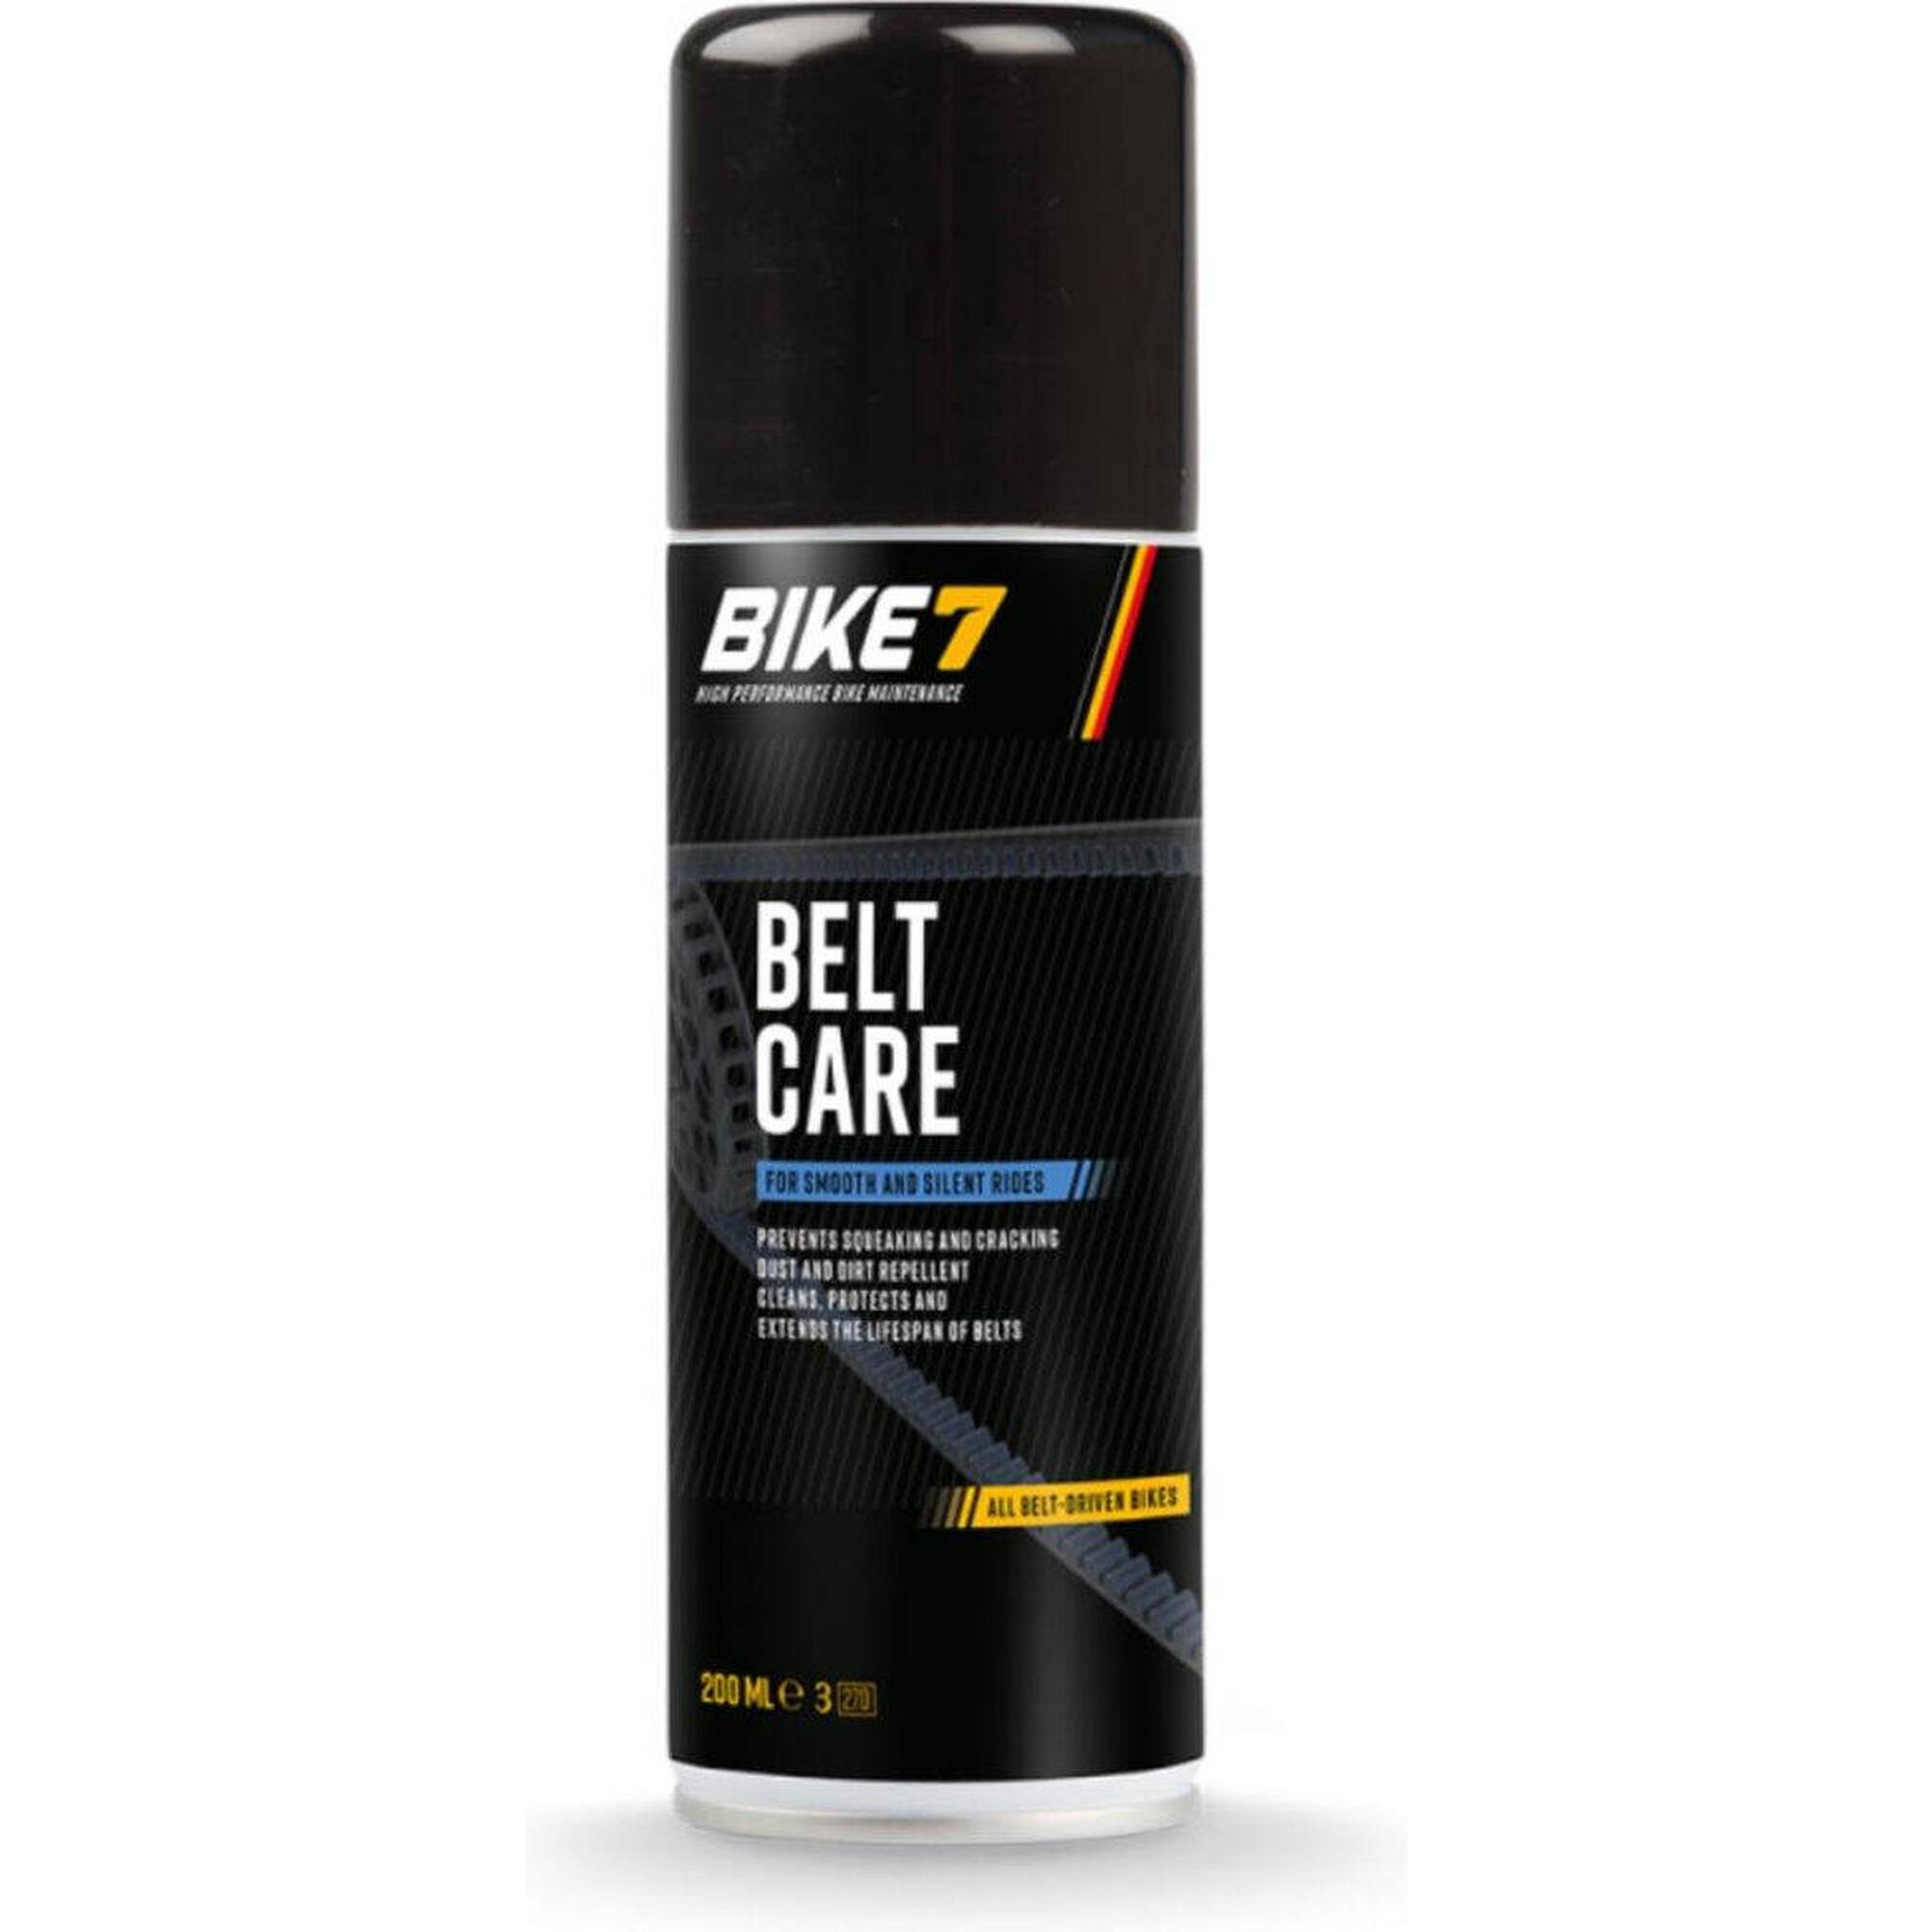 Fahrradzubehör Riemenpflege für alle Fahrräder - Bike7 Belt Care 200ml